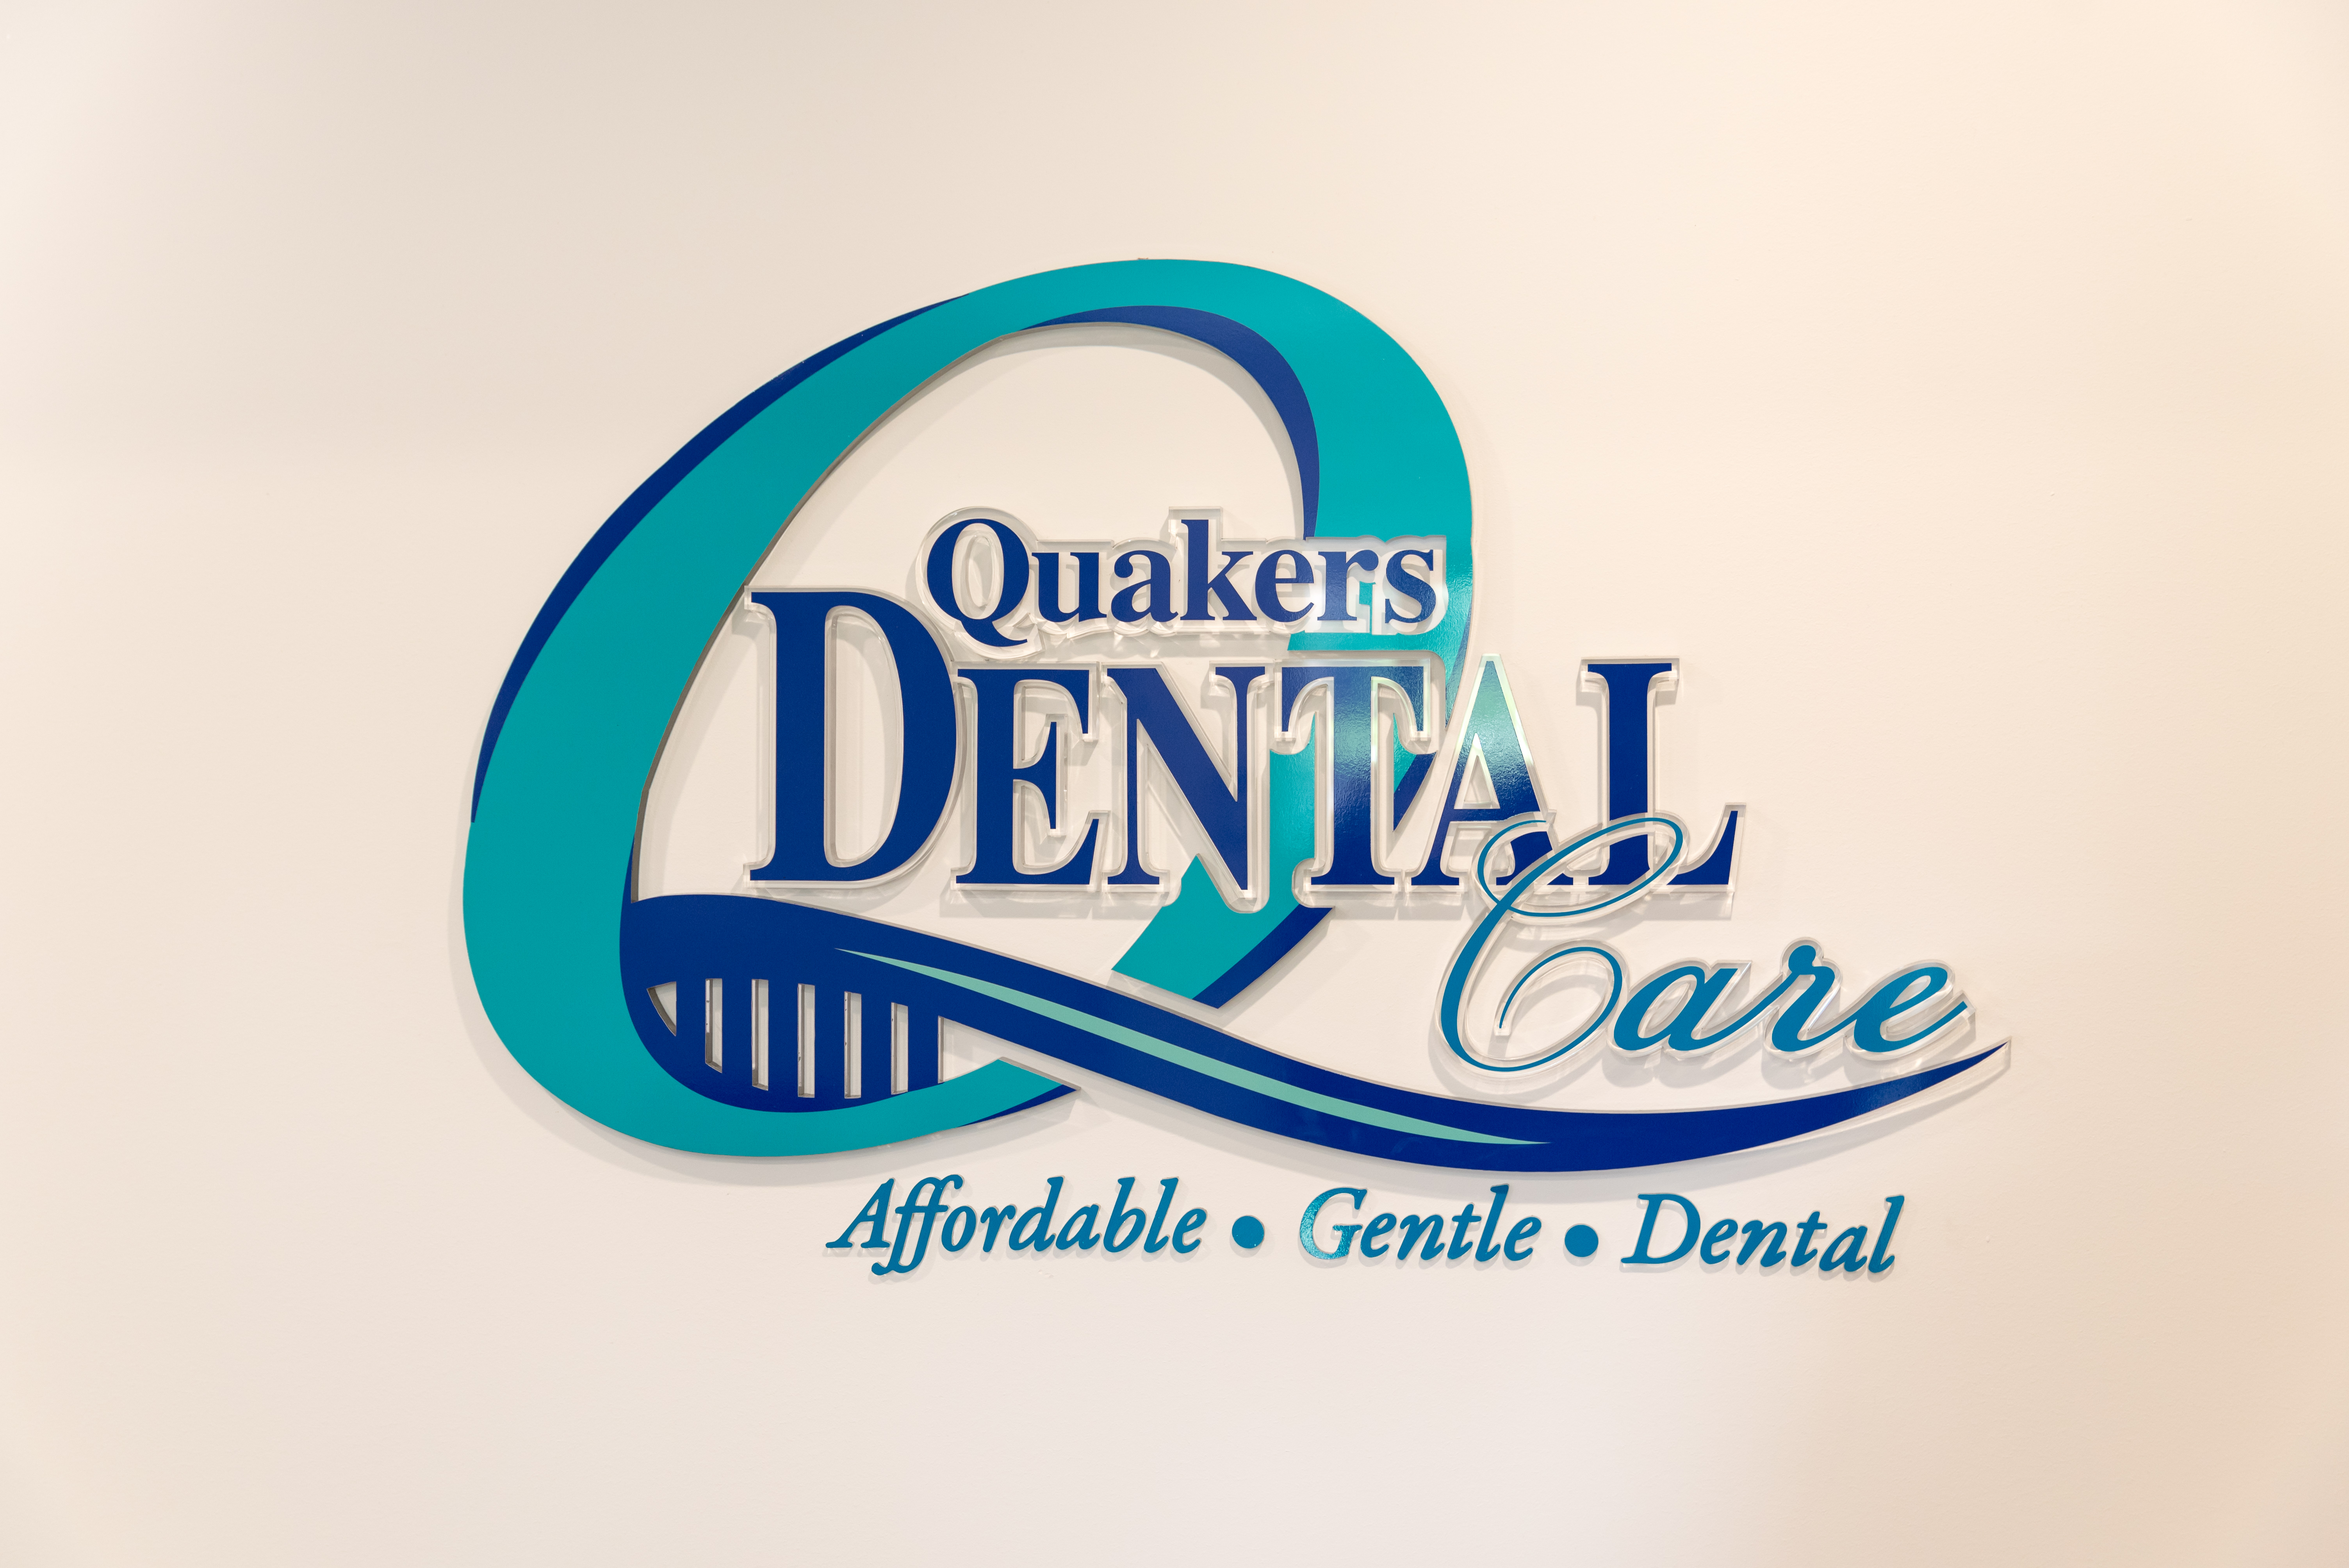 quakers dental care